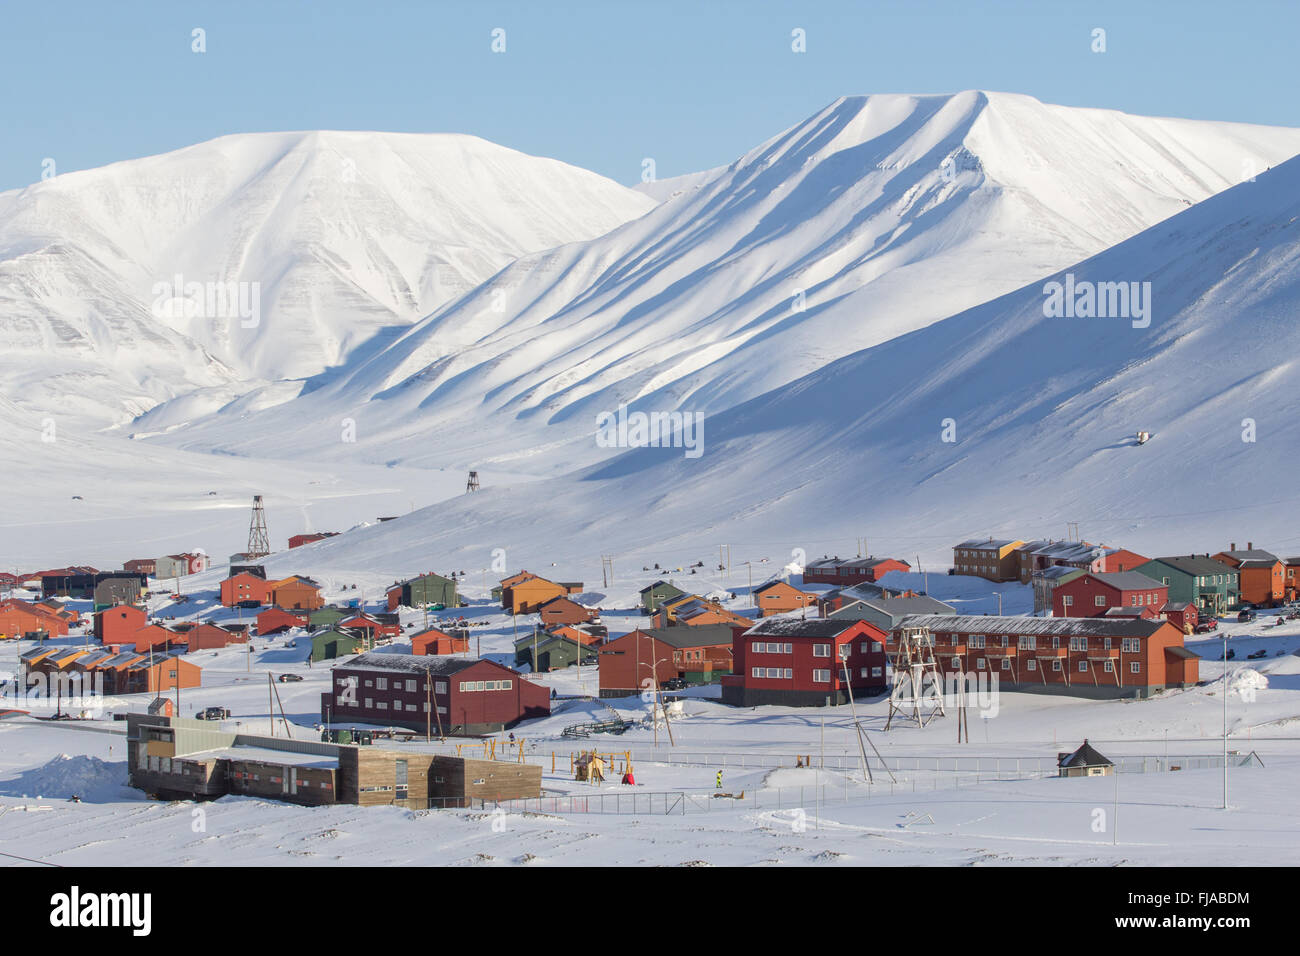 La ville est entourée de montagnes. Longyearbyen, Spitzberg (Svalbard). La Norvège Banque D'Images